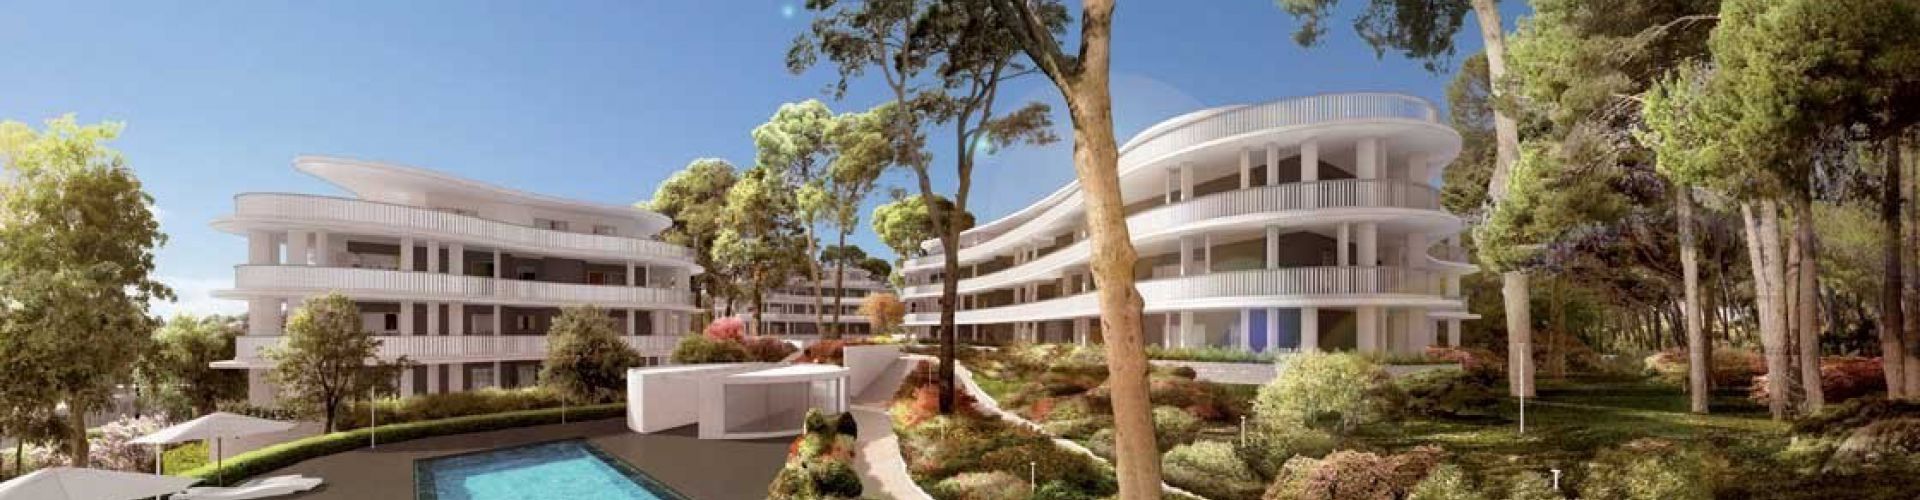 New build project - Propriété de prestige à vendre Montpellier Uzès Sète